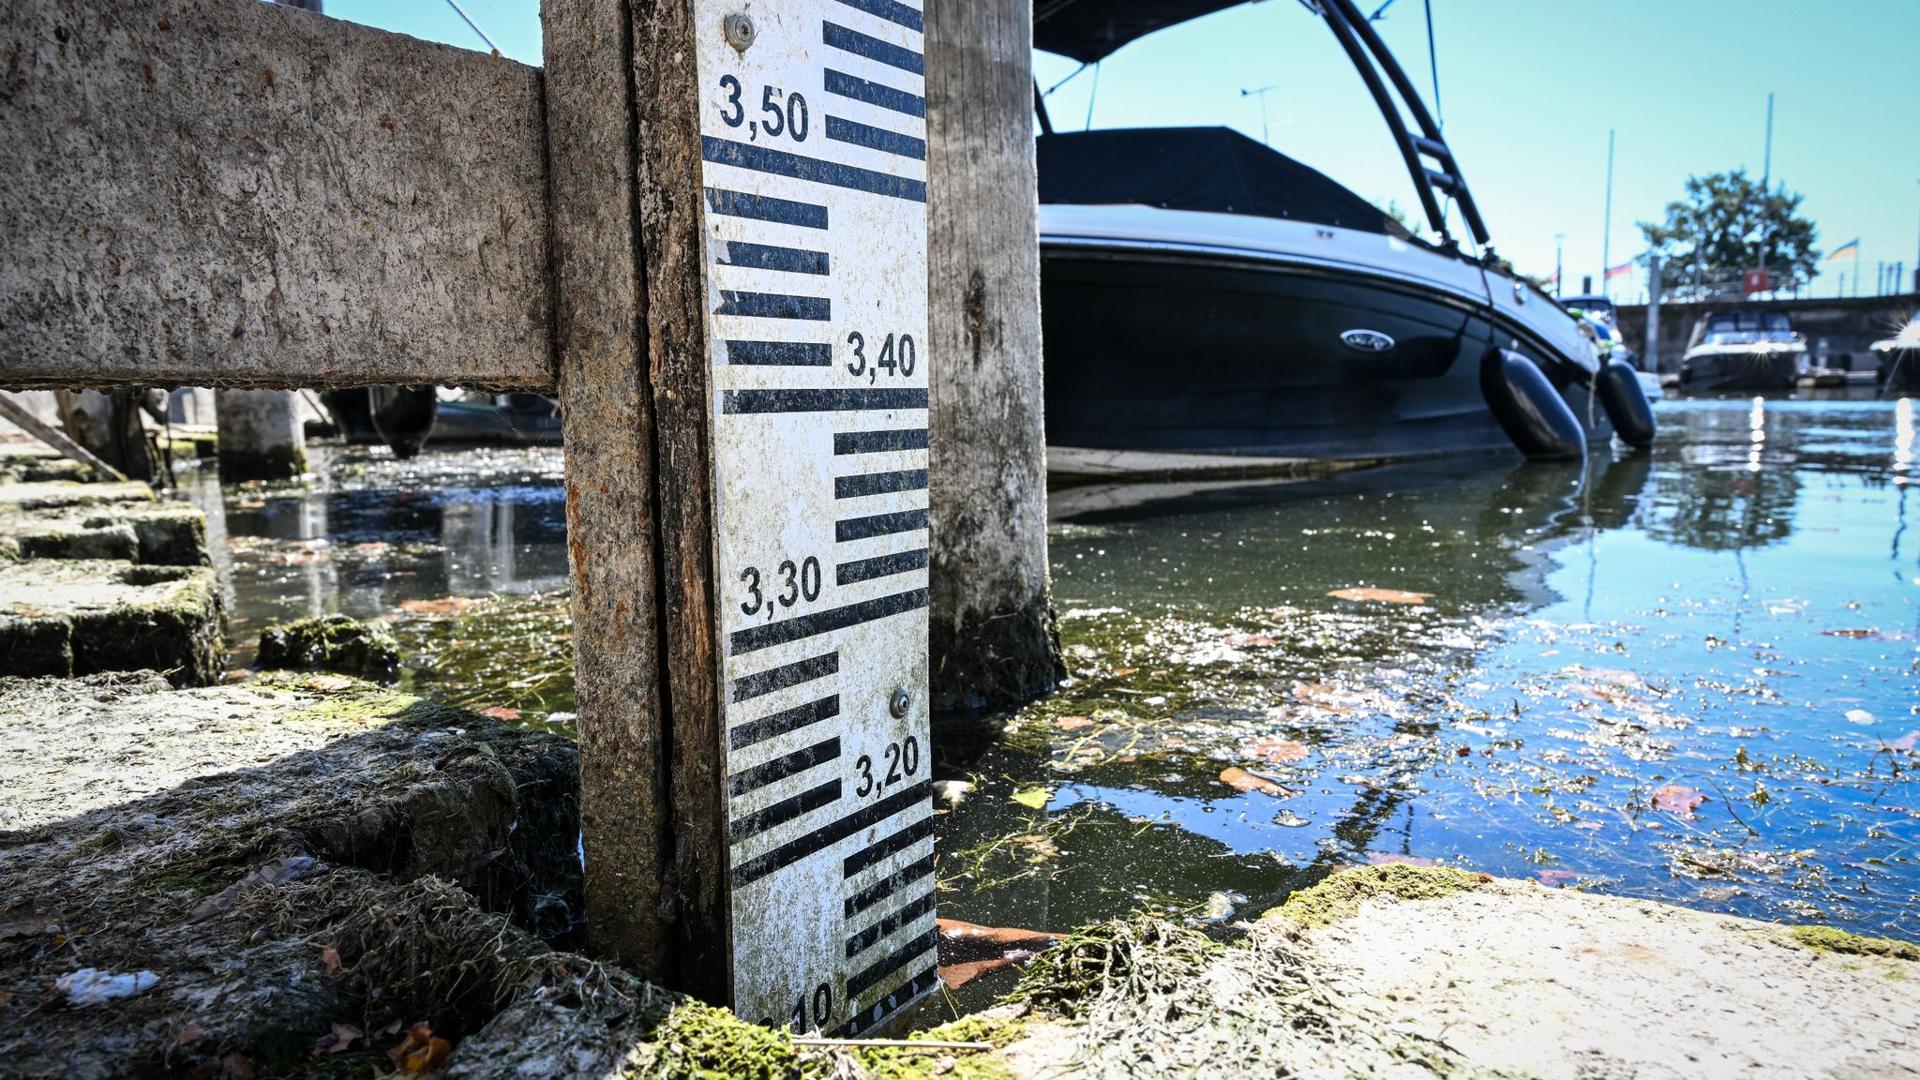 Ein Boot liegt im Hafen von Langenargen, während der Pegel des Bodensees auf unter 3,10 Meter gesunken ist.